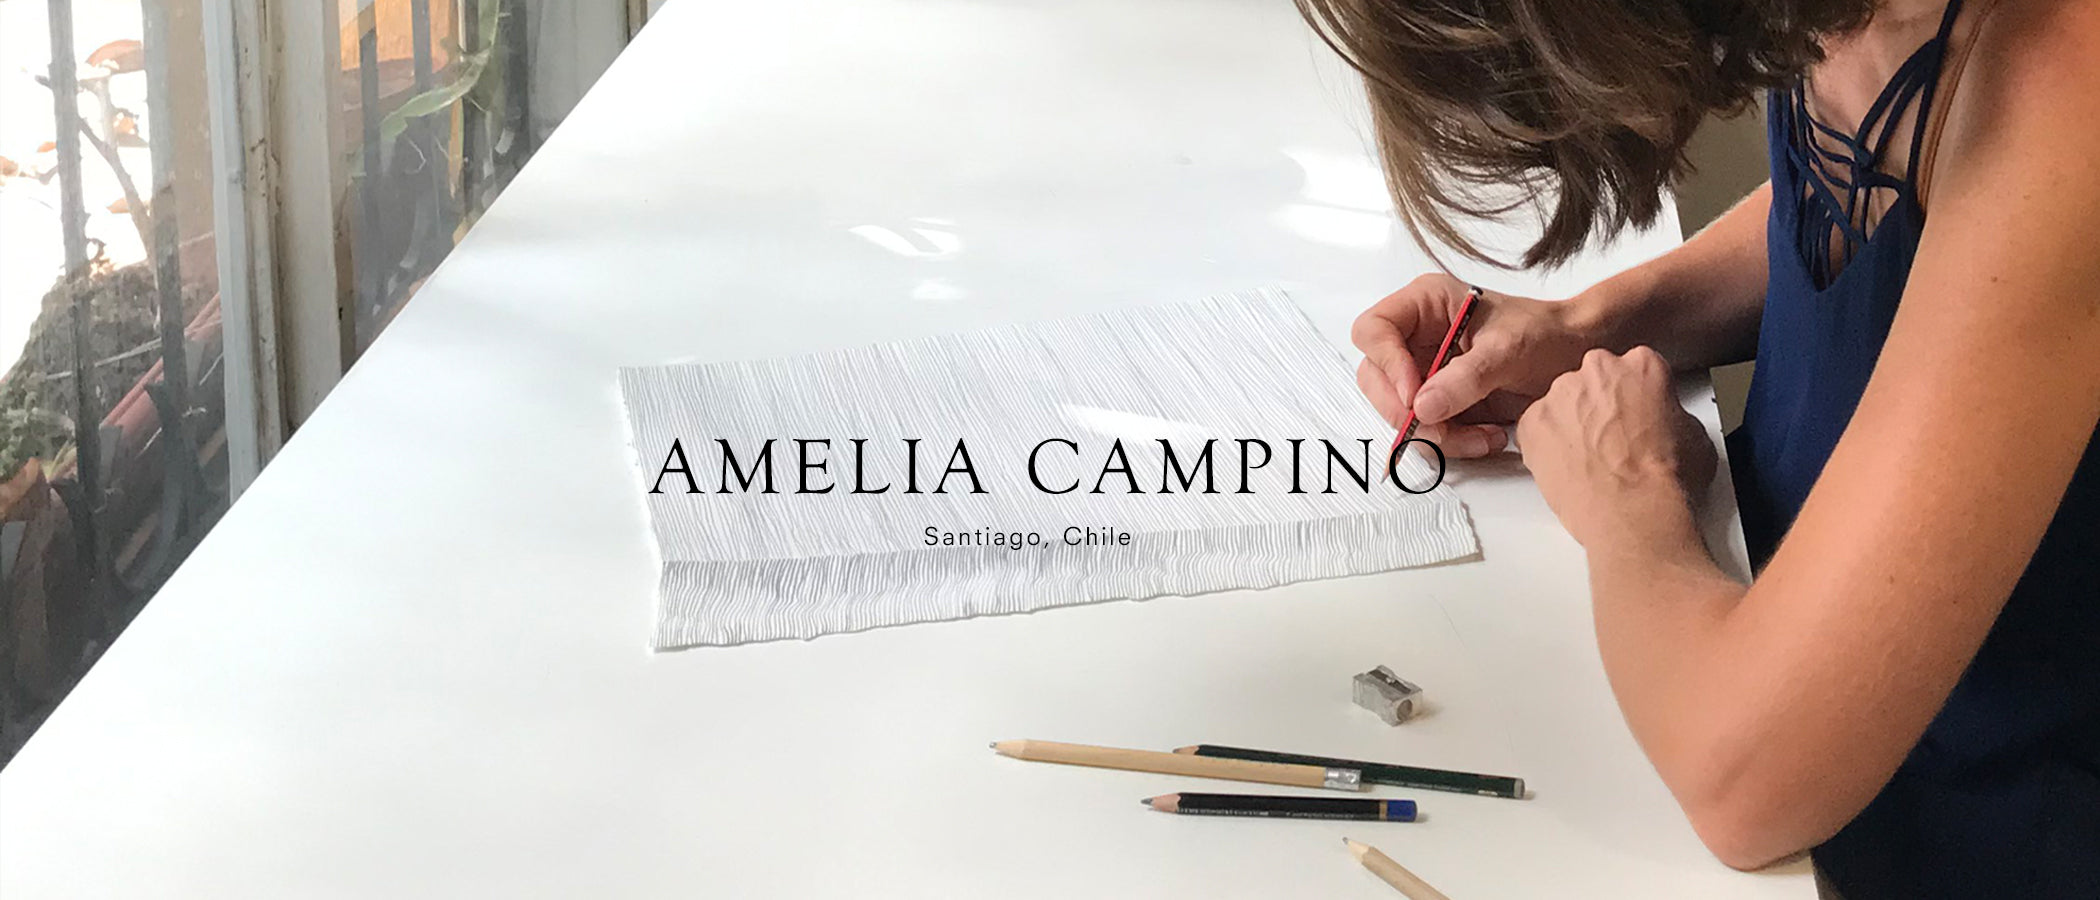 Amelia Campino